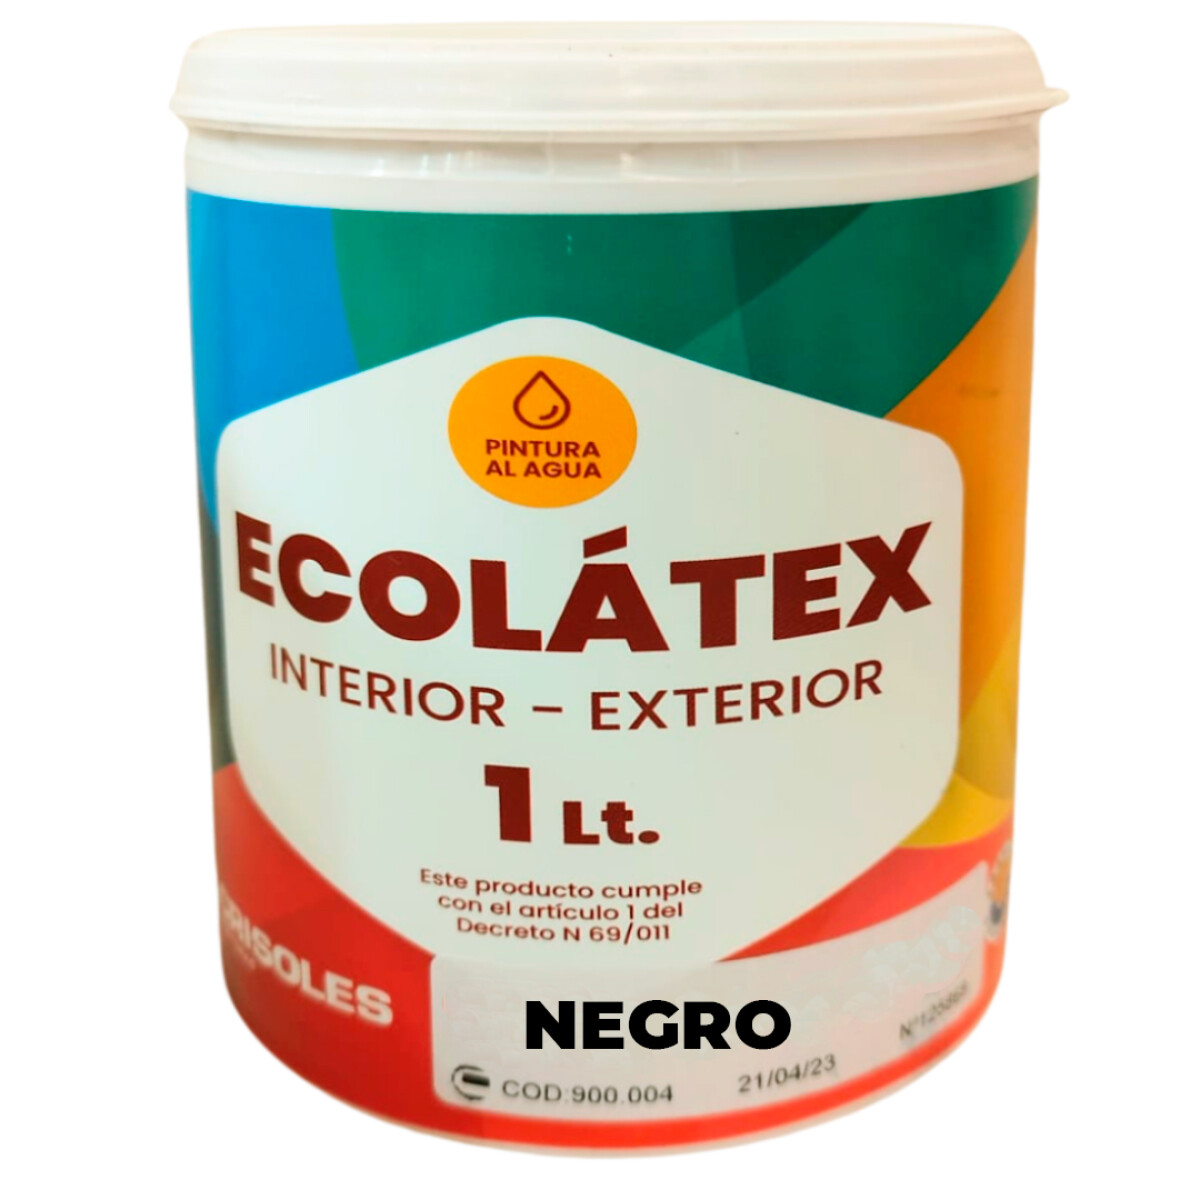 Pintura al agua ECOLÁTEX (interior - exterior) - NEGRO - 1L 